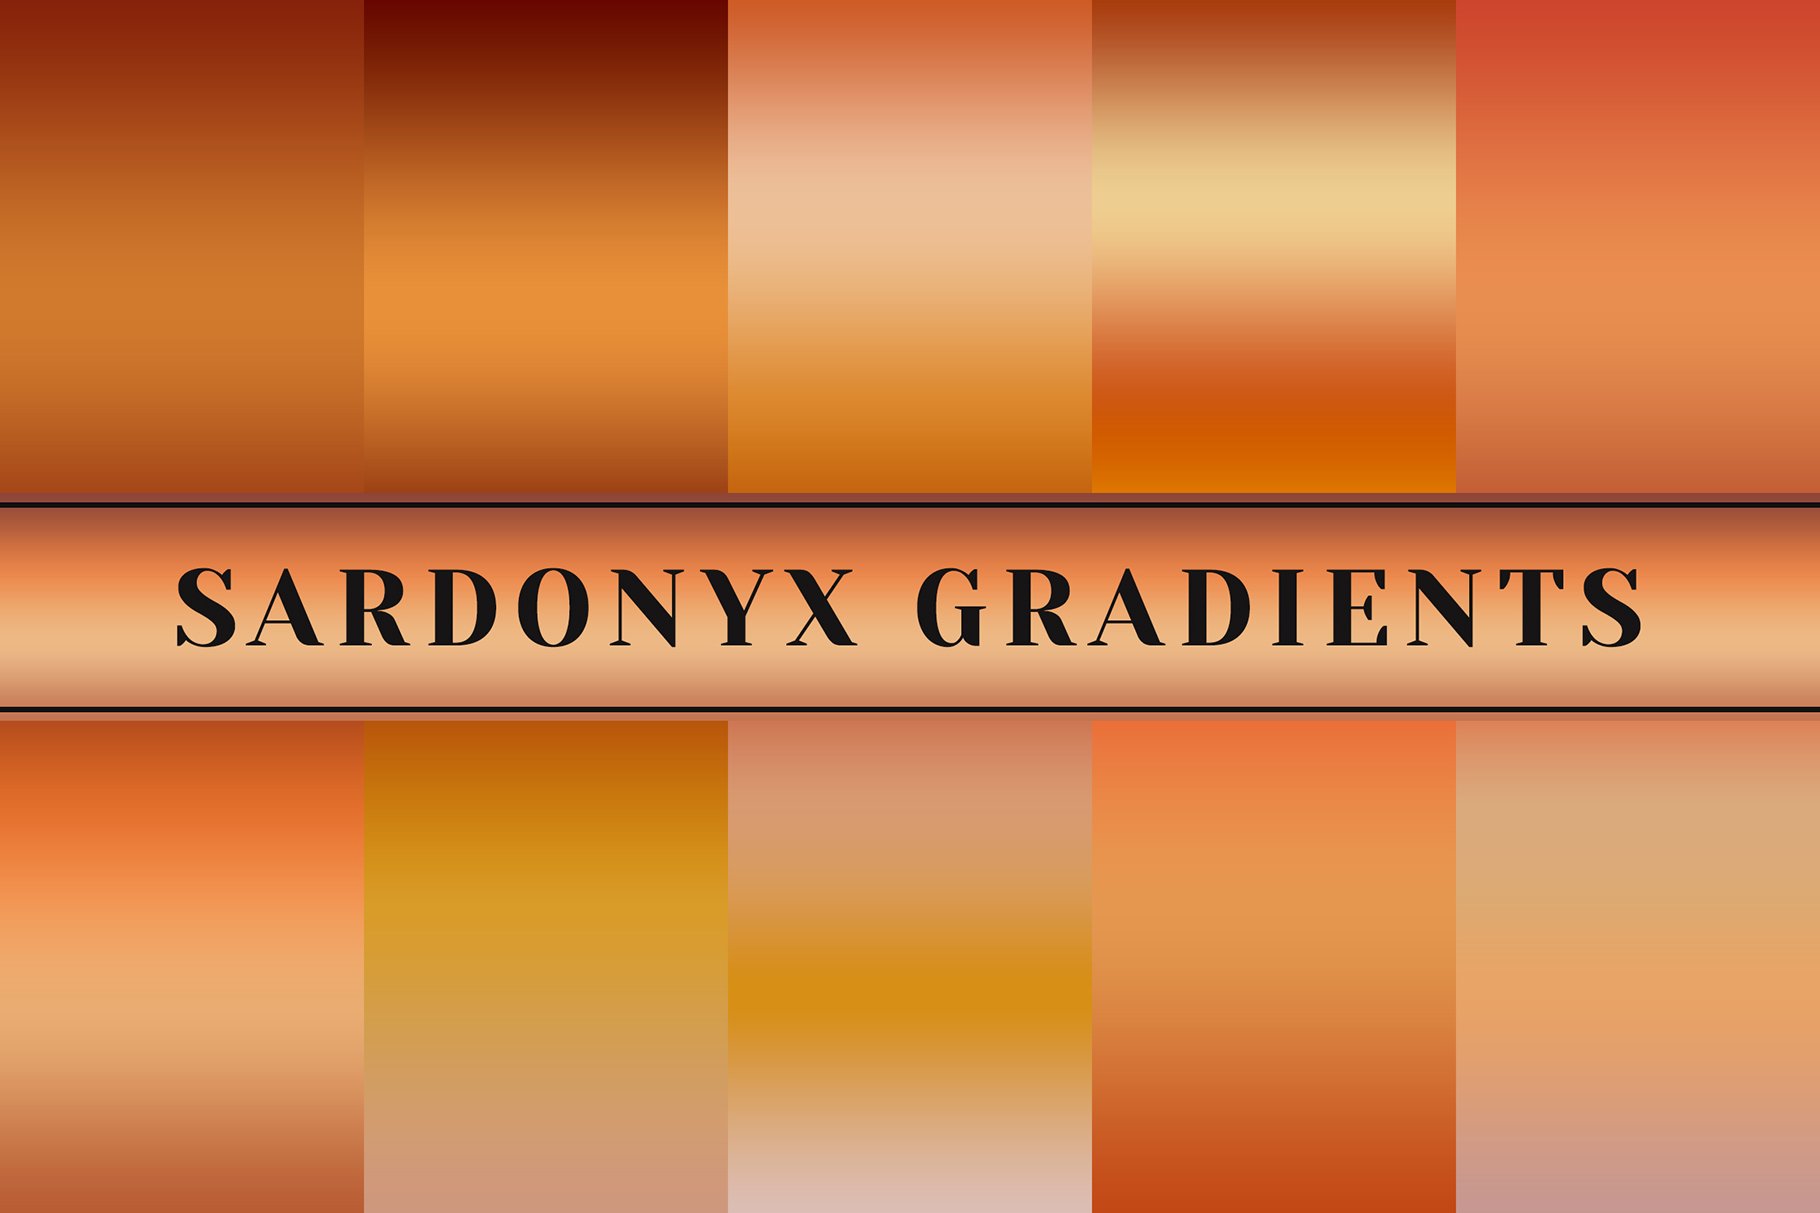 Sardonyx Gradients cover image.